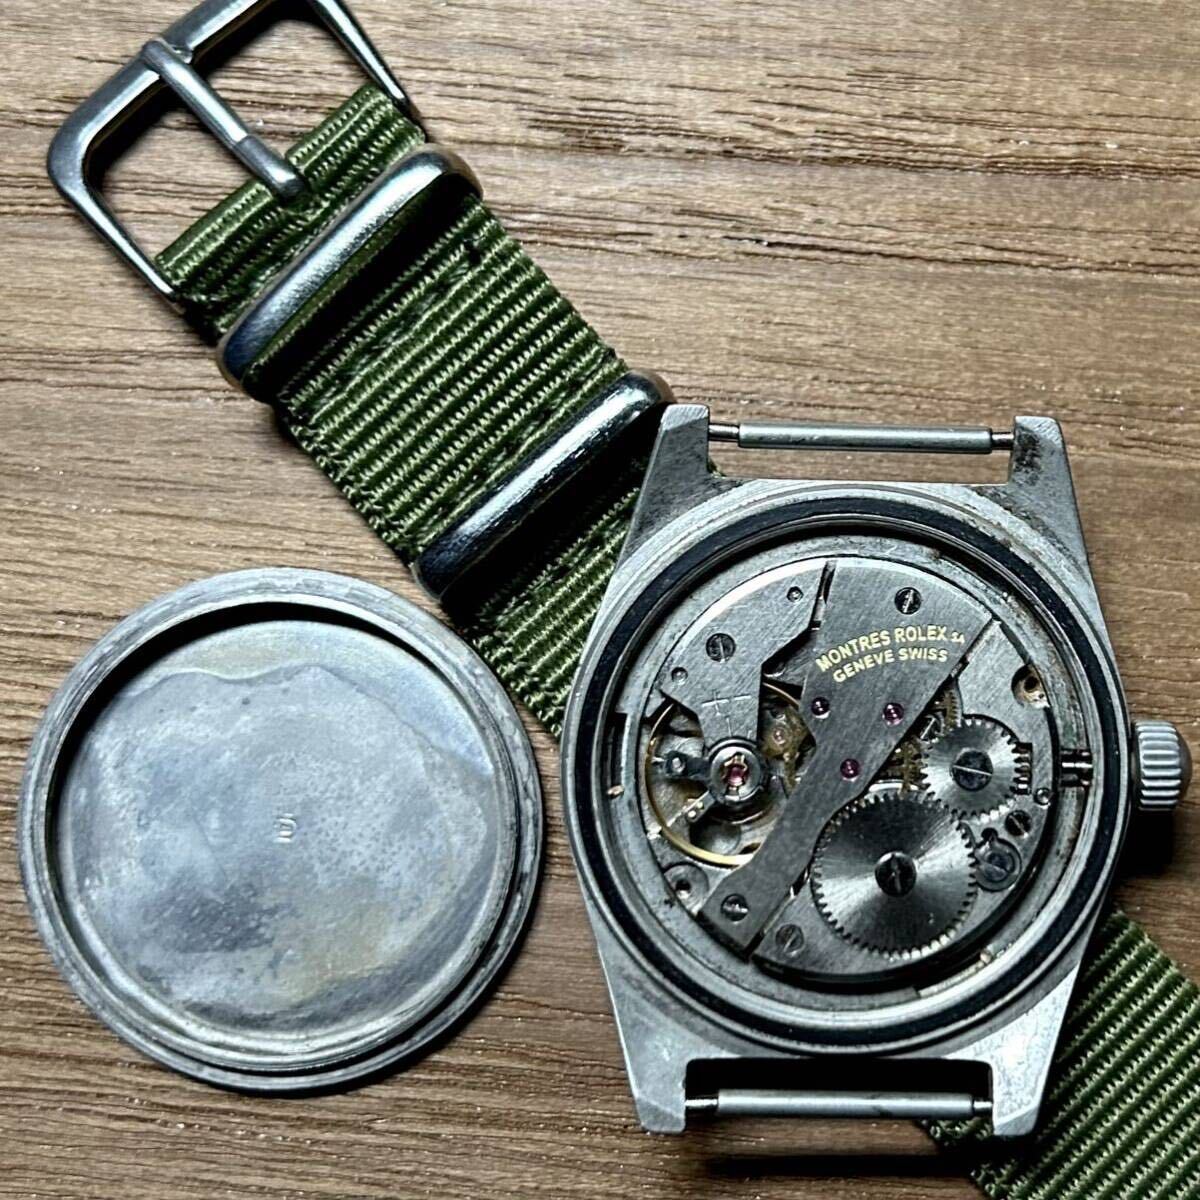 ... ROLEX  военный    антиквариат   с ручным заводом  продаю как нерабочий    винтаж   Вьетнам ...  наручные часы  военный   часы    работа   товар   механический тип   ... для  часы 